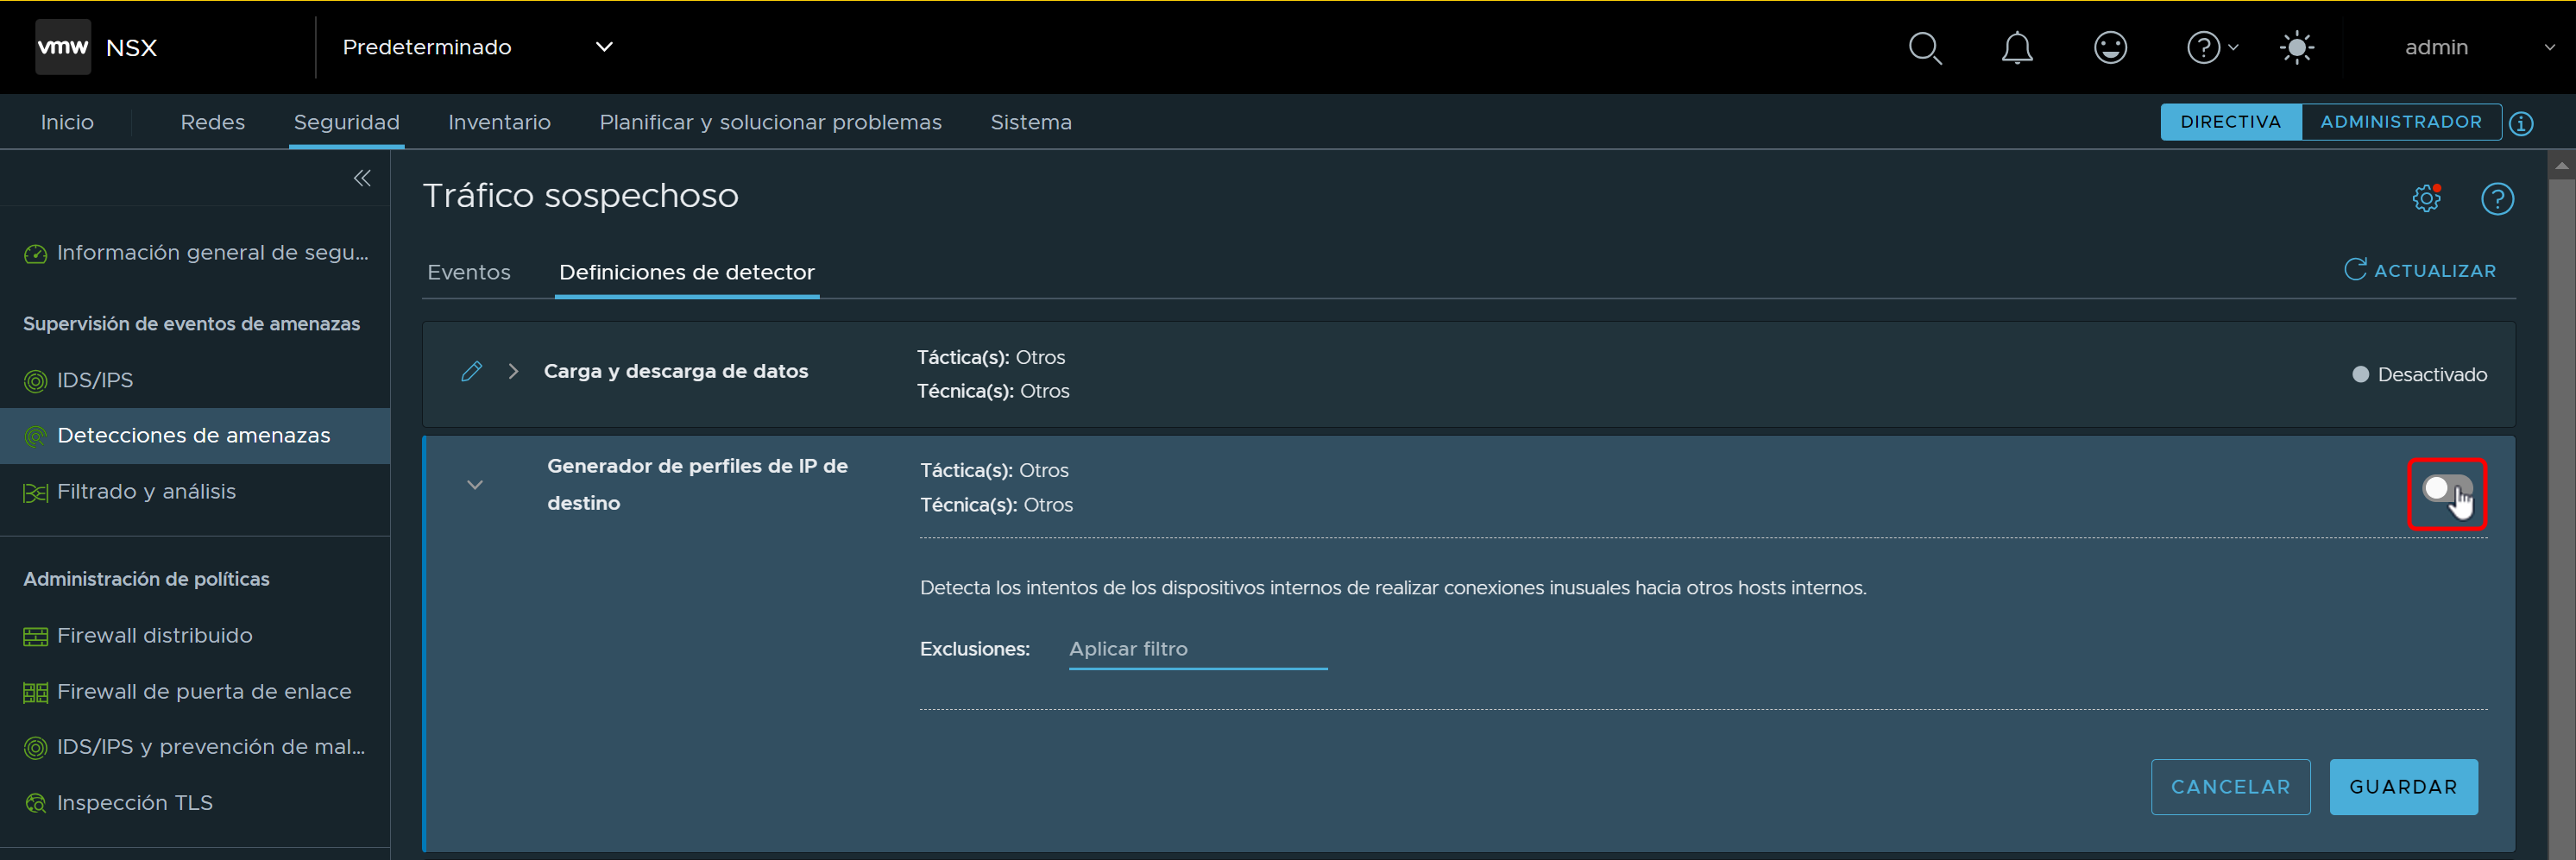 Captura de pantalla de la pestaña Definiciones de detector en la interfaz de usuario de Tráfico sospechoso.